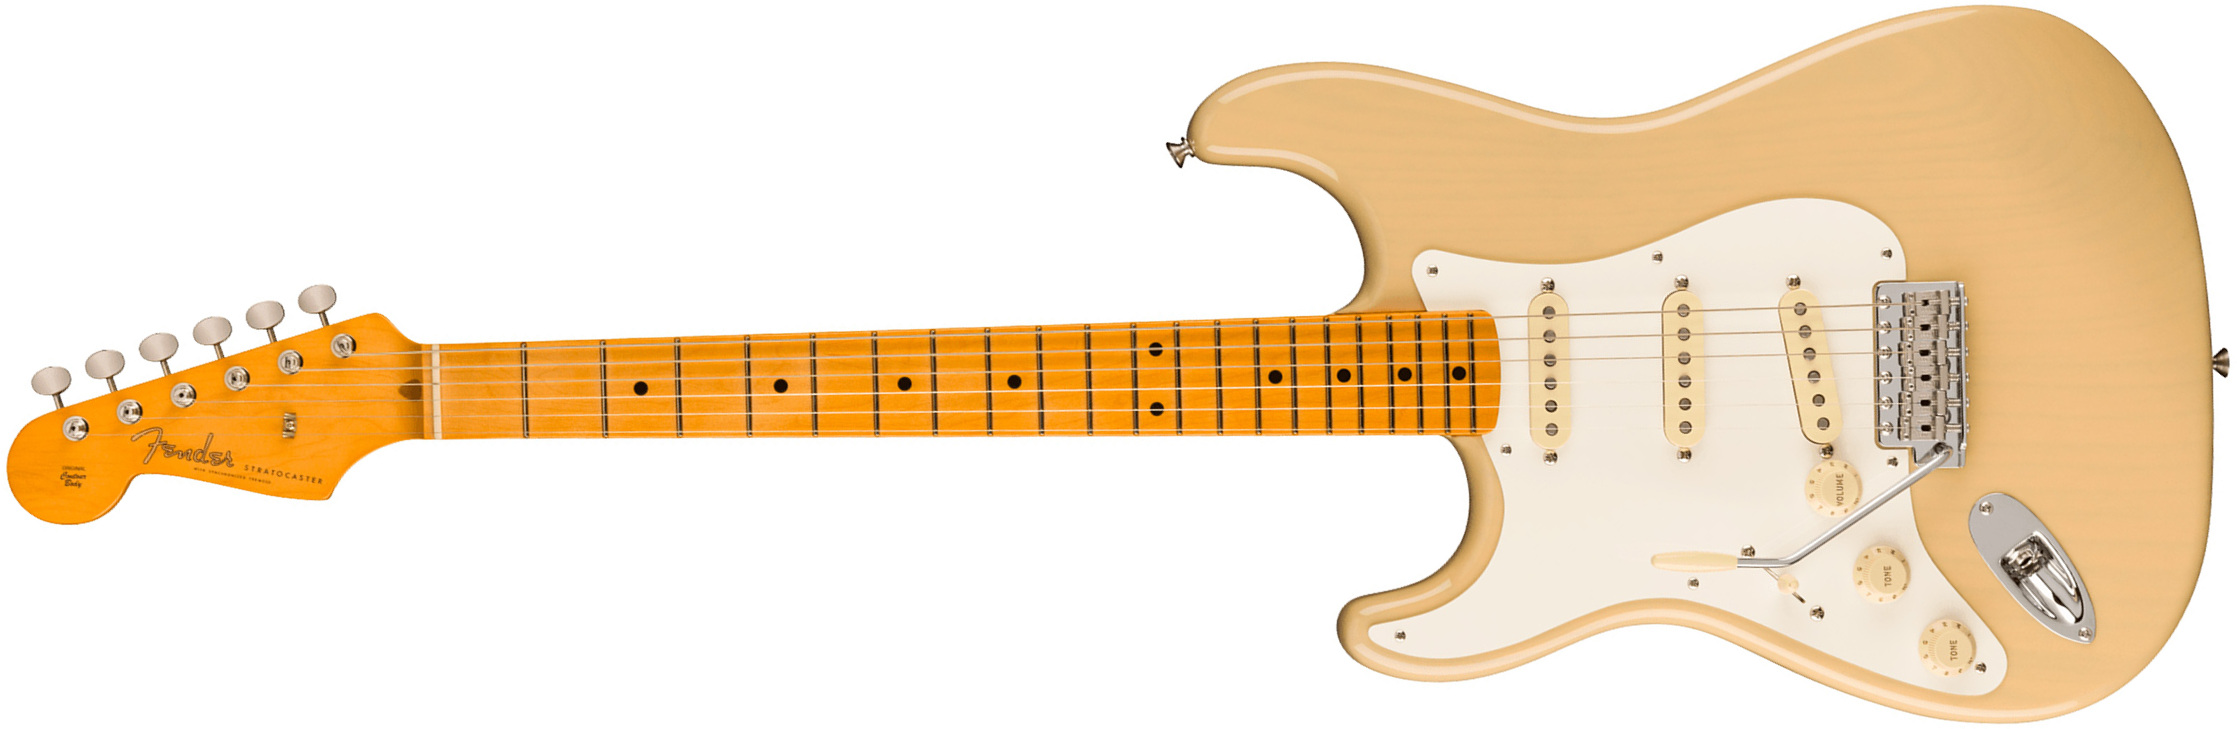 Fender Strat 1957 American Vintage Ii Lh Gaucher Usa 3s Trem Mn - Vintage Blonde - E-Gitarre für Linkshänder - Main picture